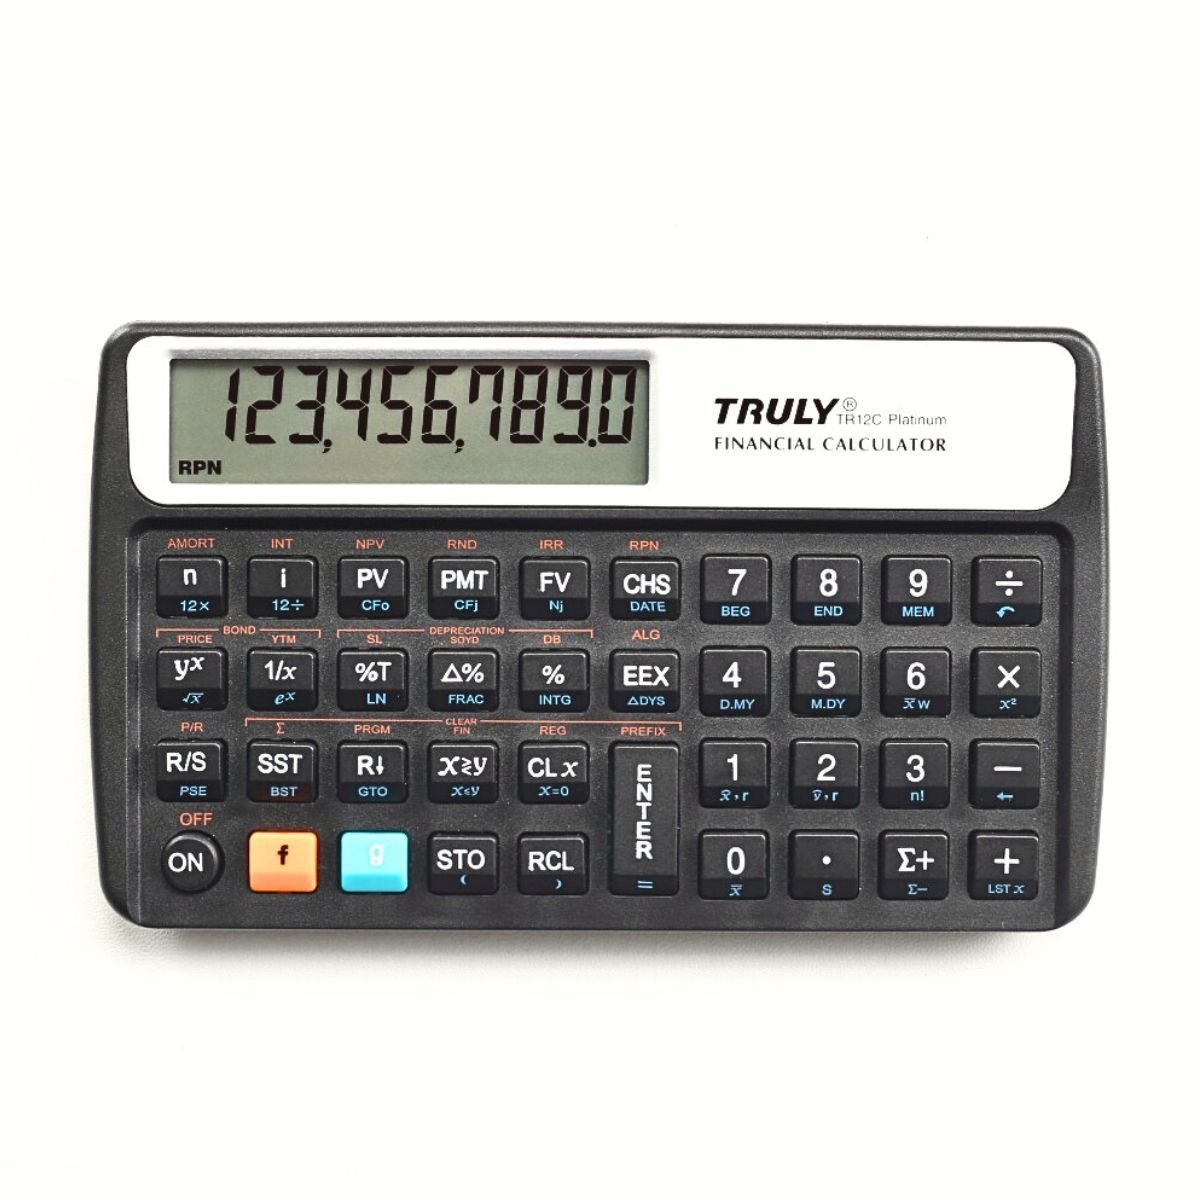 Calculadora Financeira Truly Tr12c Platinum +120 Funções Rpn